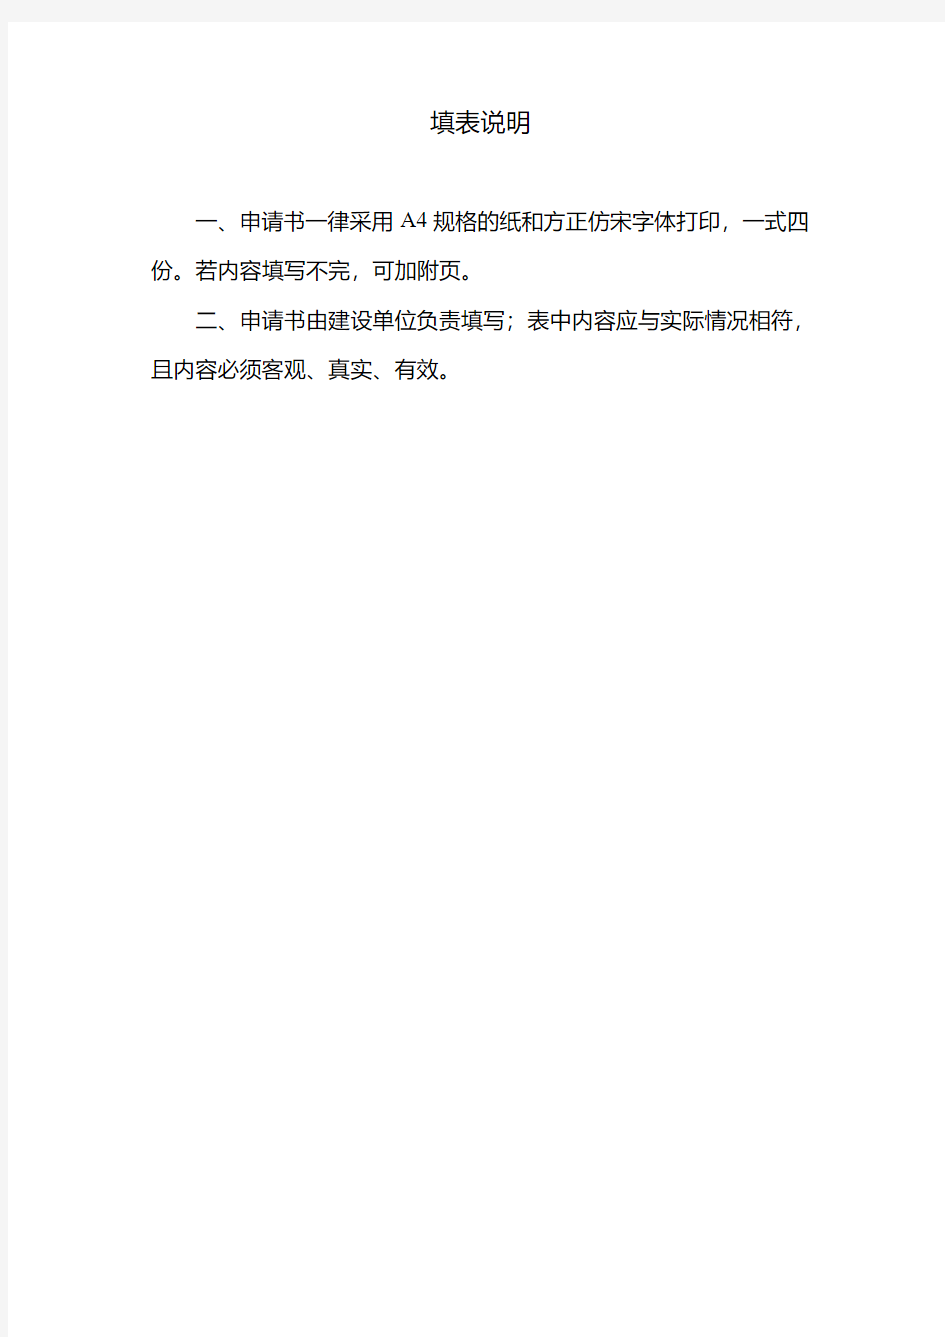 重庆市建筑能效(绿色建筑)测评与标识申请表-填写范例